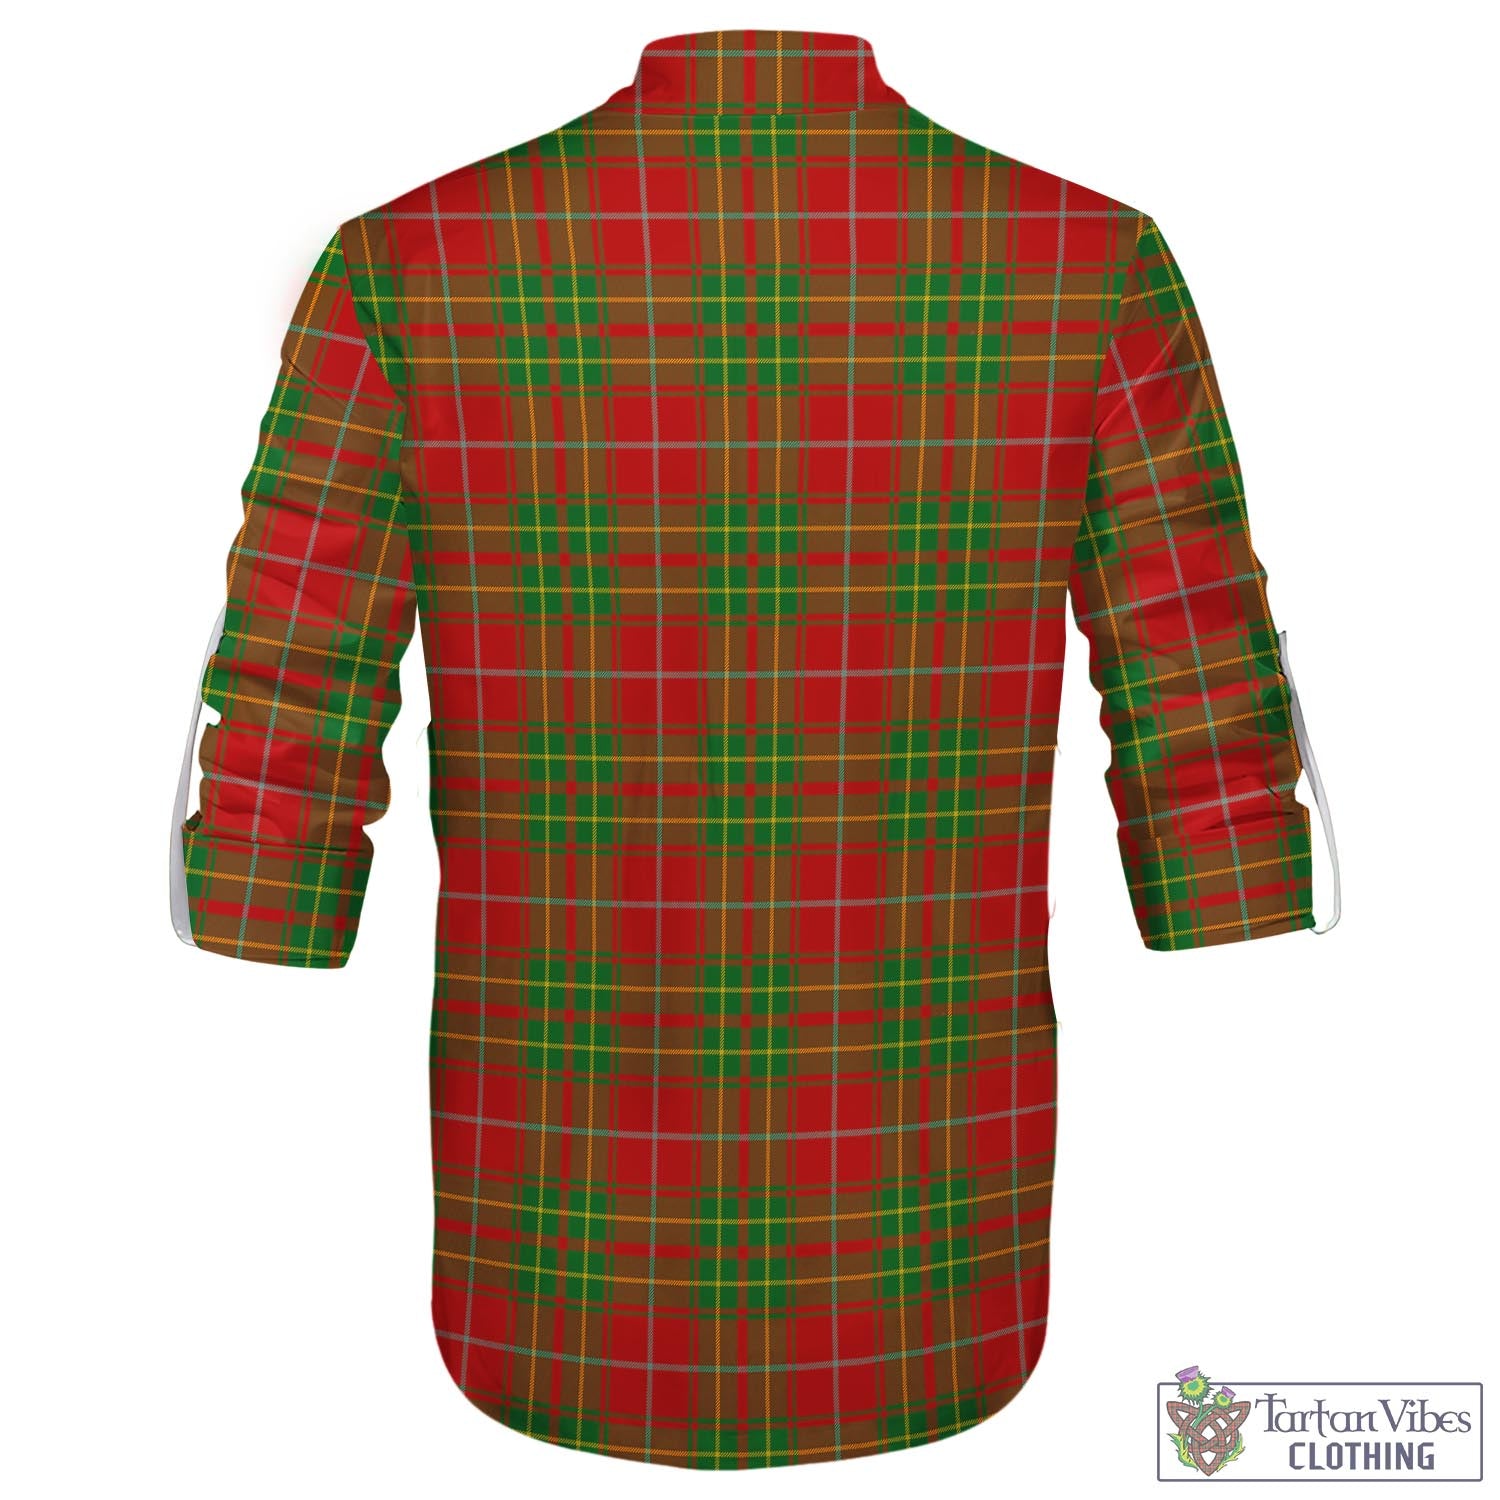 Tartan Vibes Clothing Burnett Ancient Tartan Men's Scottish Traditional Jacobite Ghillie Kilt Shirt with Family Crest